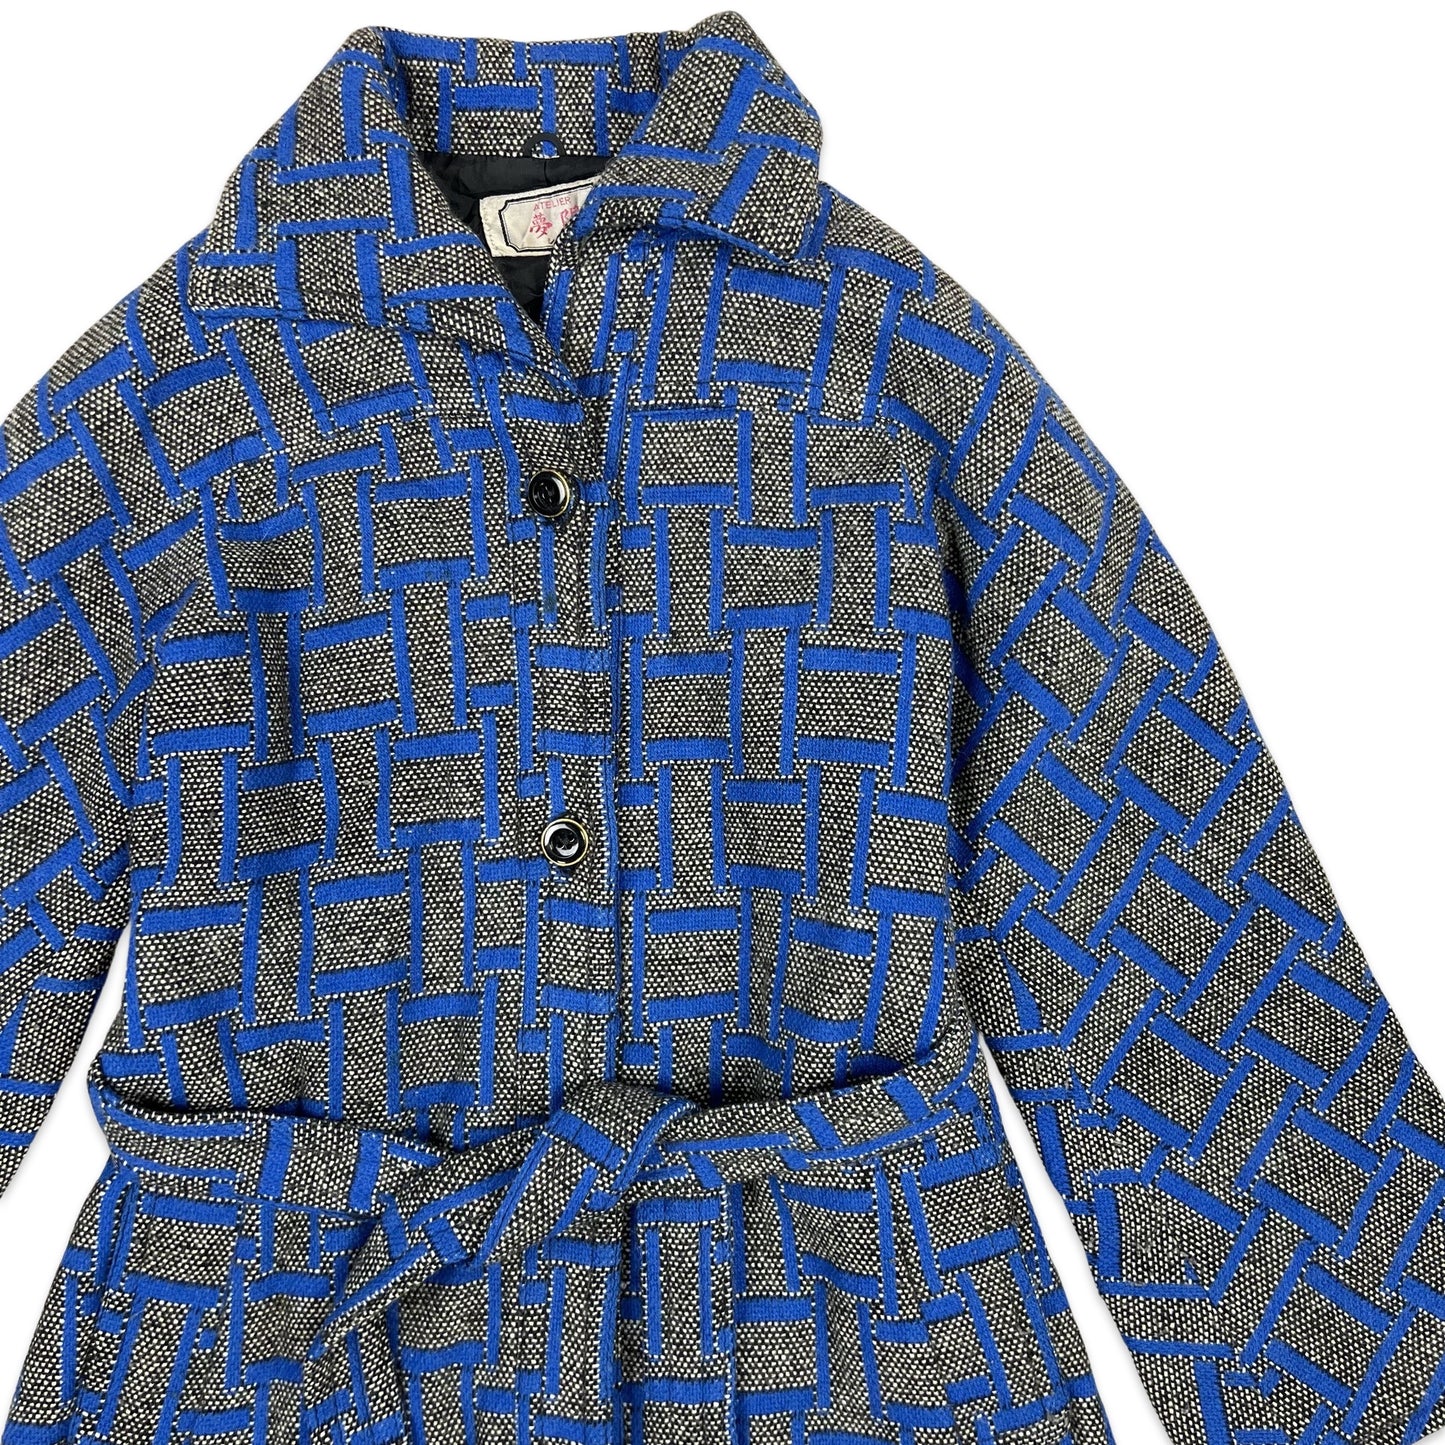 Vintage Wool Midi Coat Geometric Pattern Belted Blue Black Grey 6 8